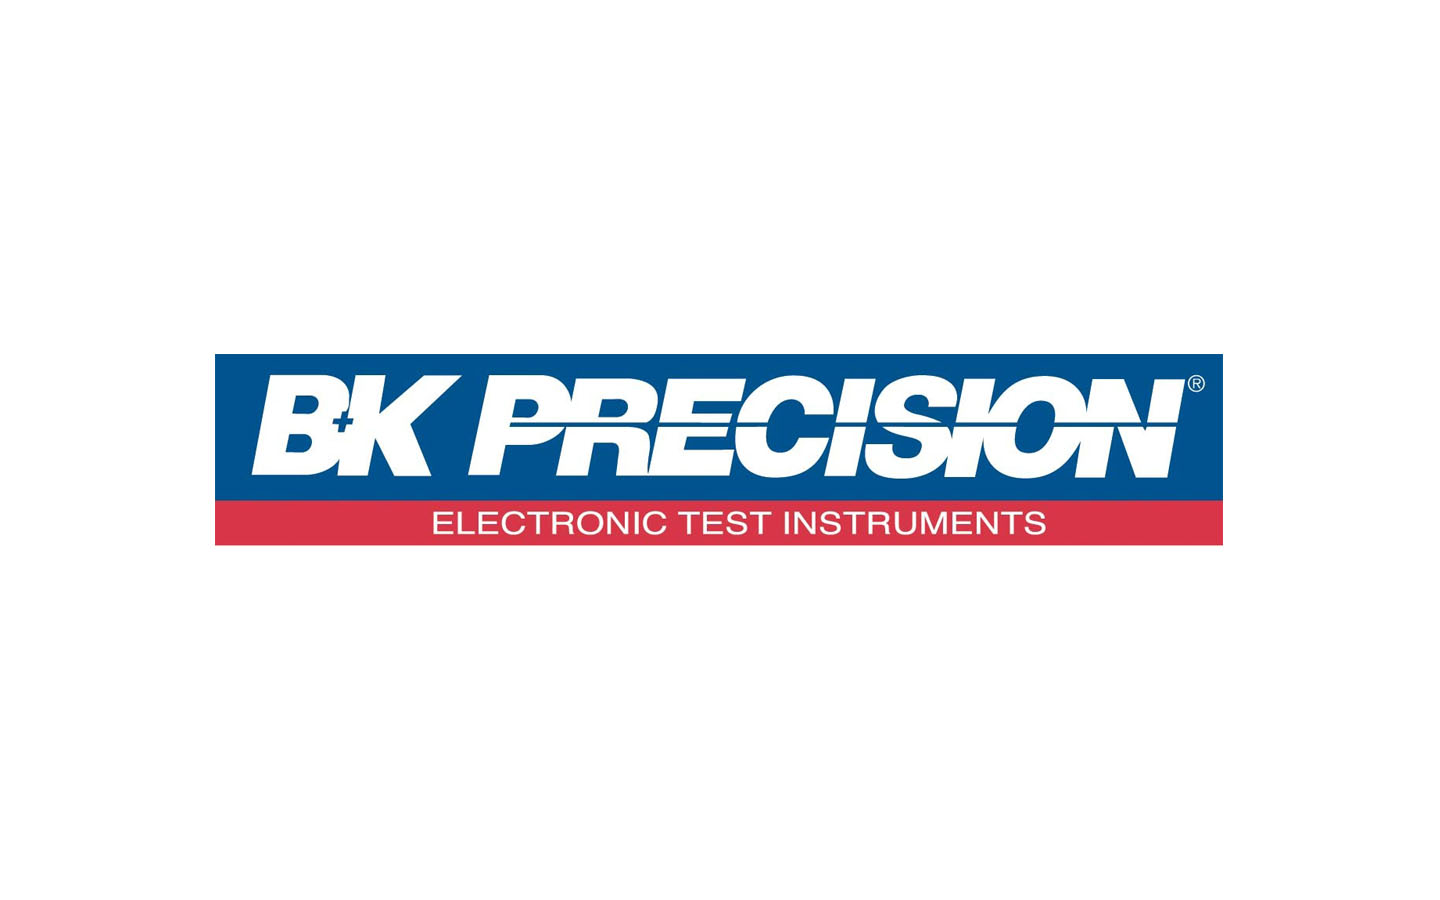 BK Precision